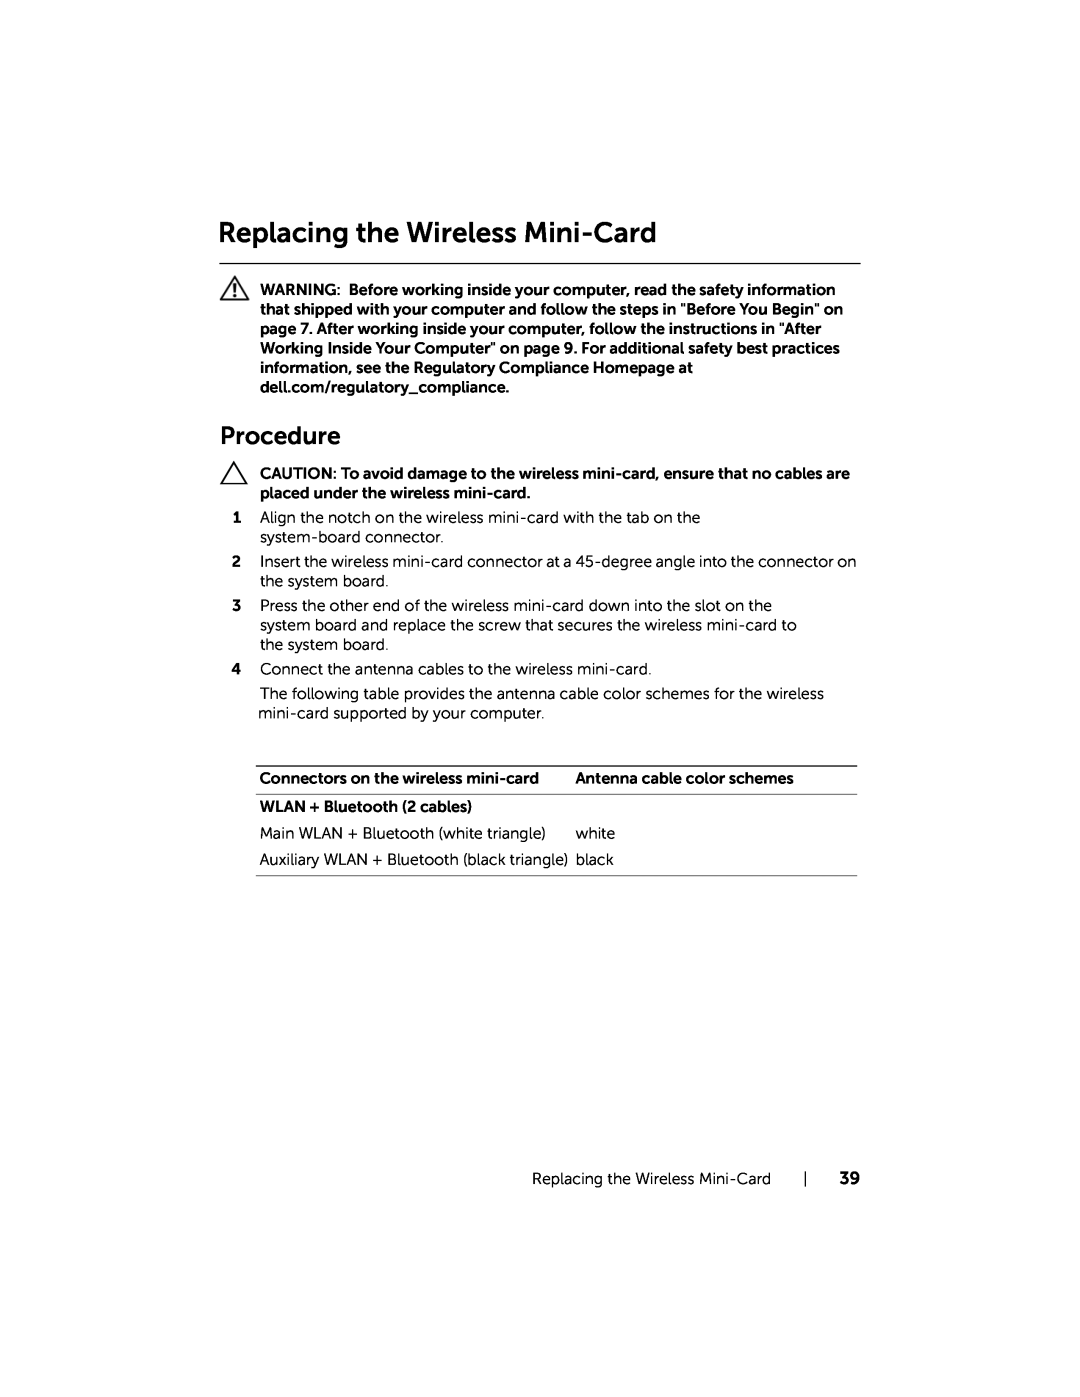 Dell 5521, 3521 manual Replacing the Wireless Mini-Card, Procedure 